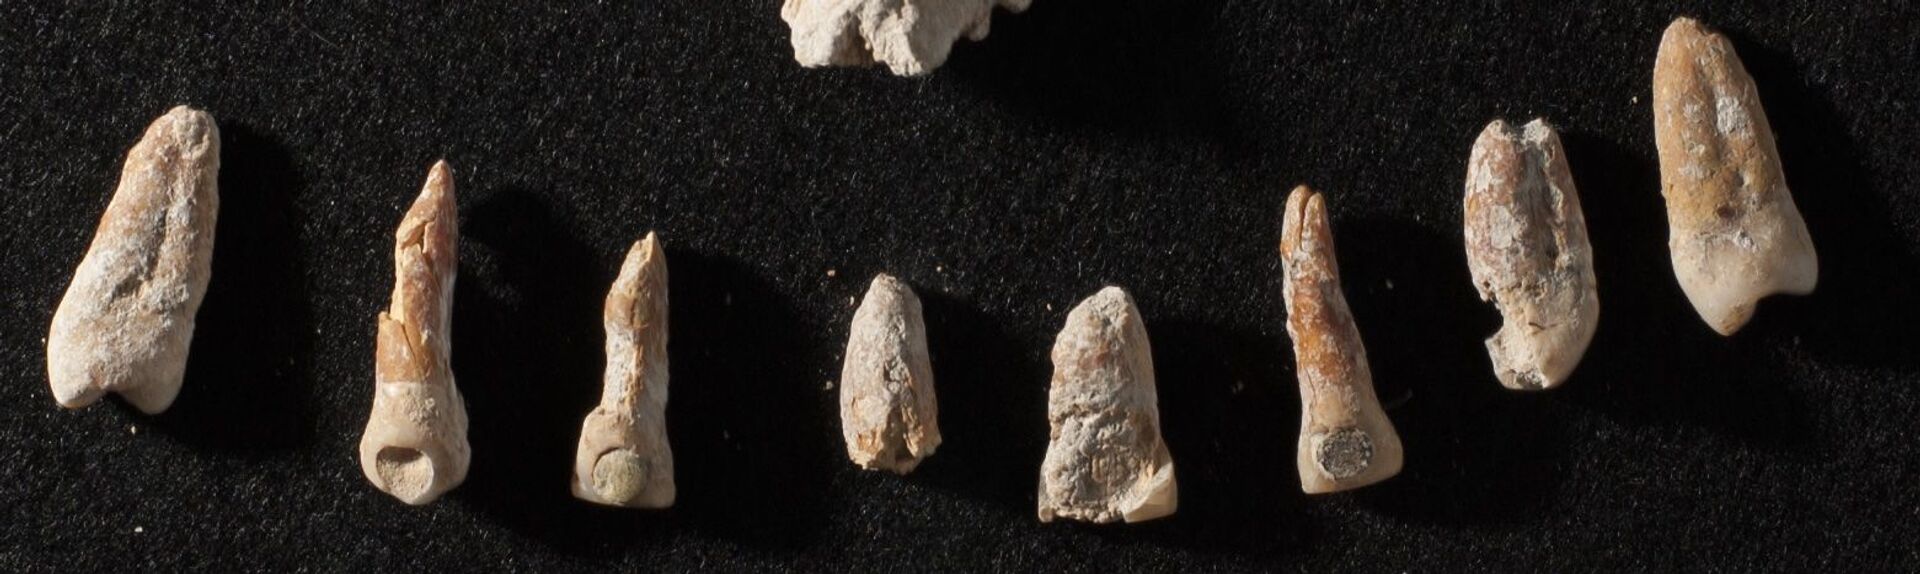 Restos cranianos e dentais encontrados no México revelam vida de embaixador maia (FOTOS) - Sputnik Brasil, 1920, 18.03.2021